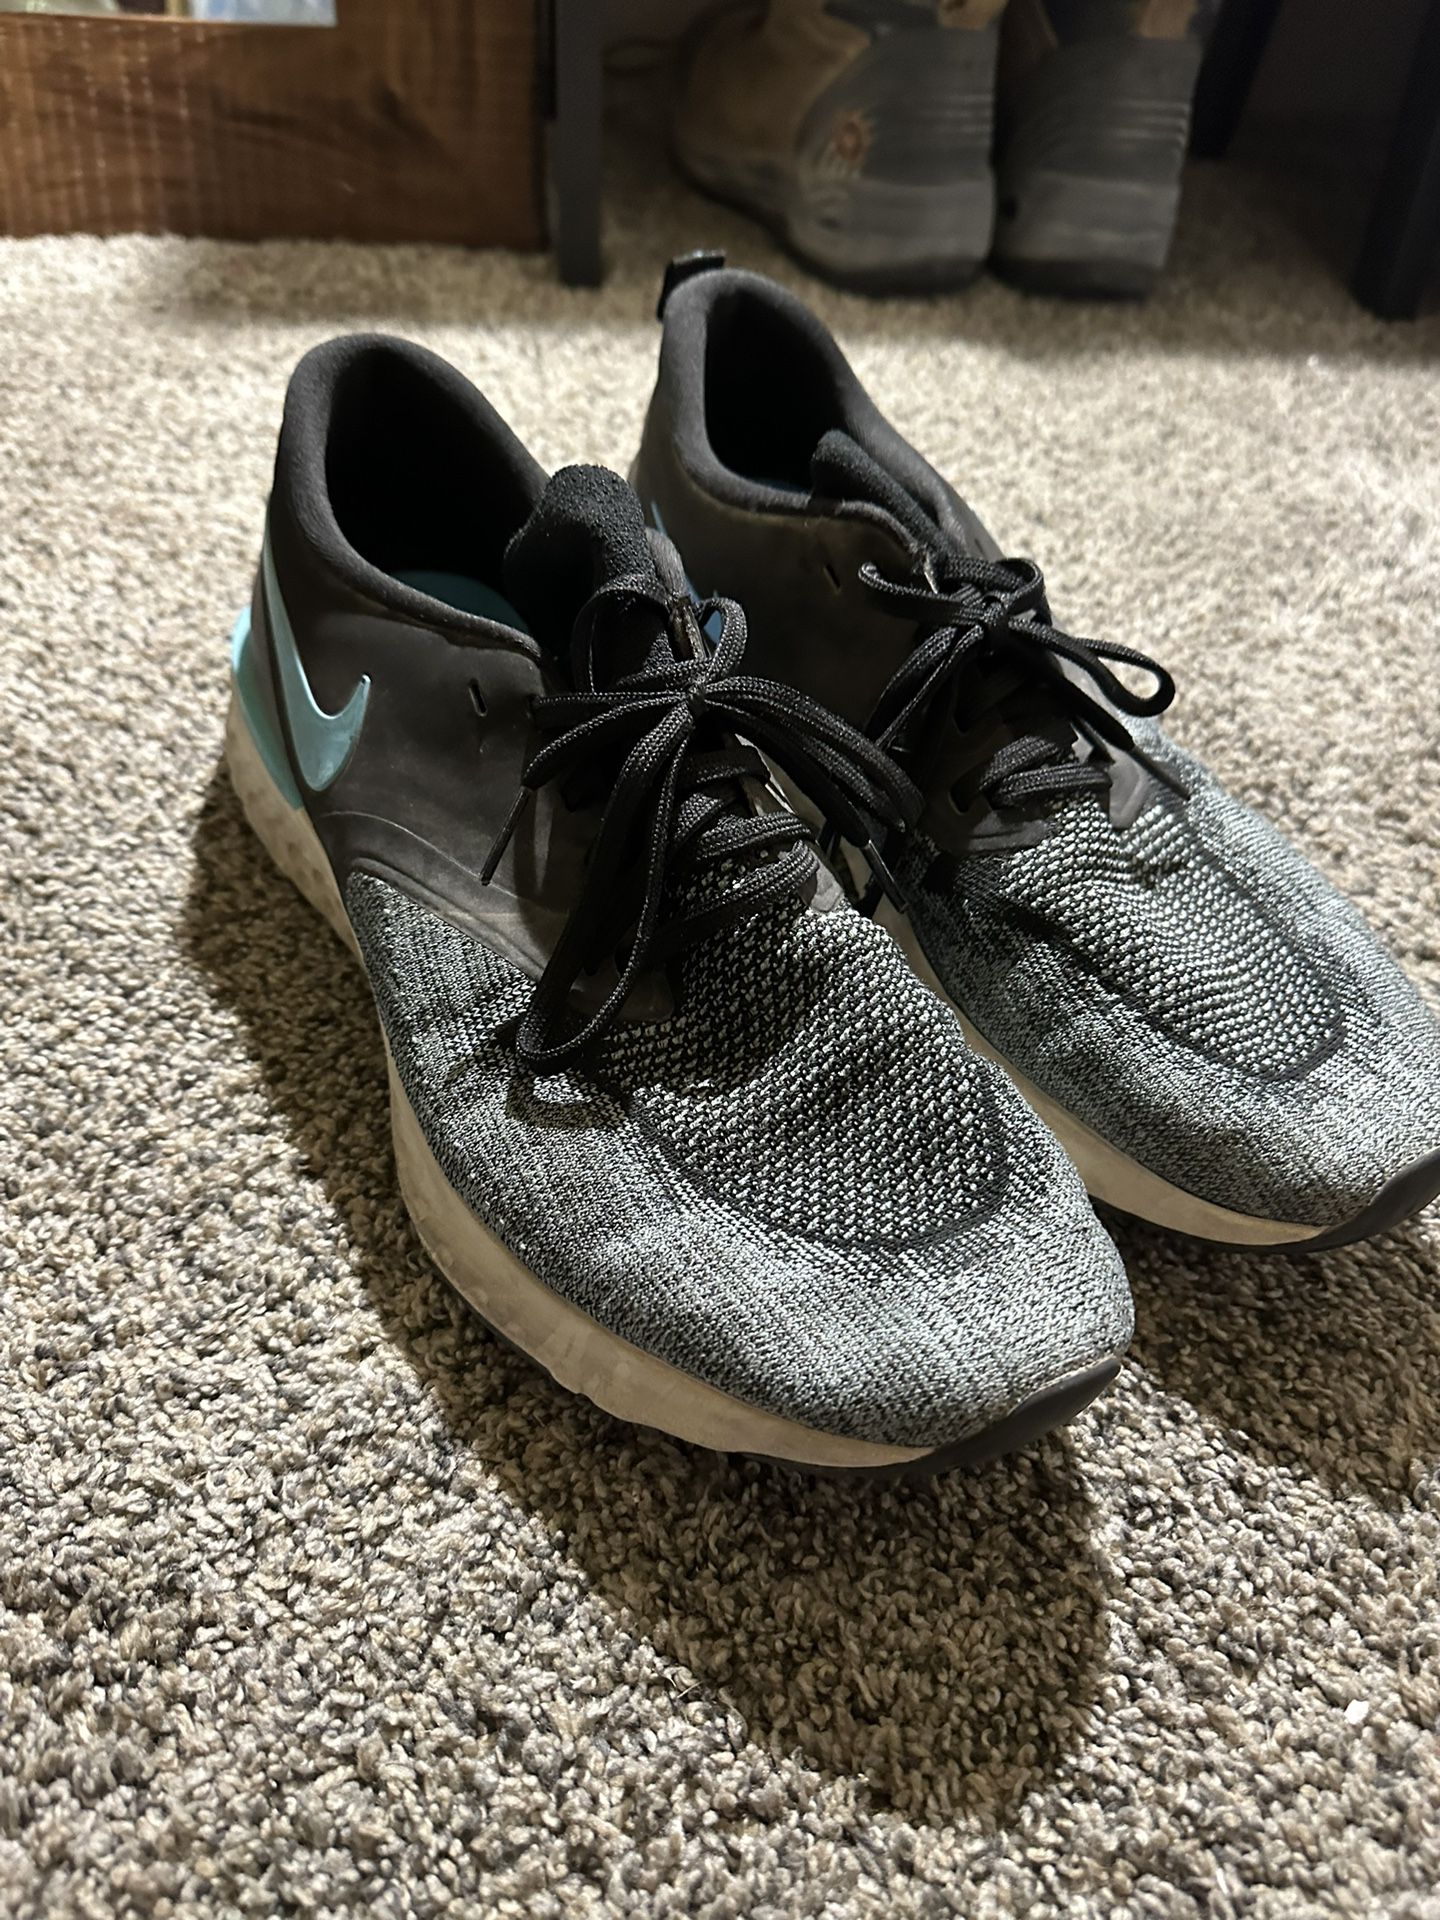 Nike Running Shoes Size Ten